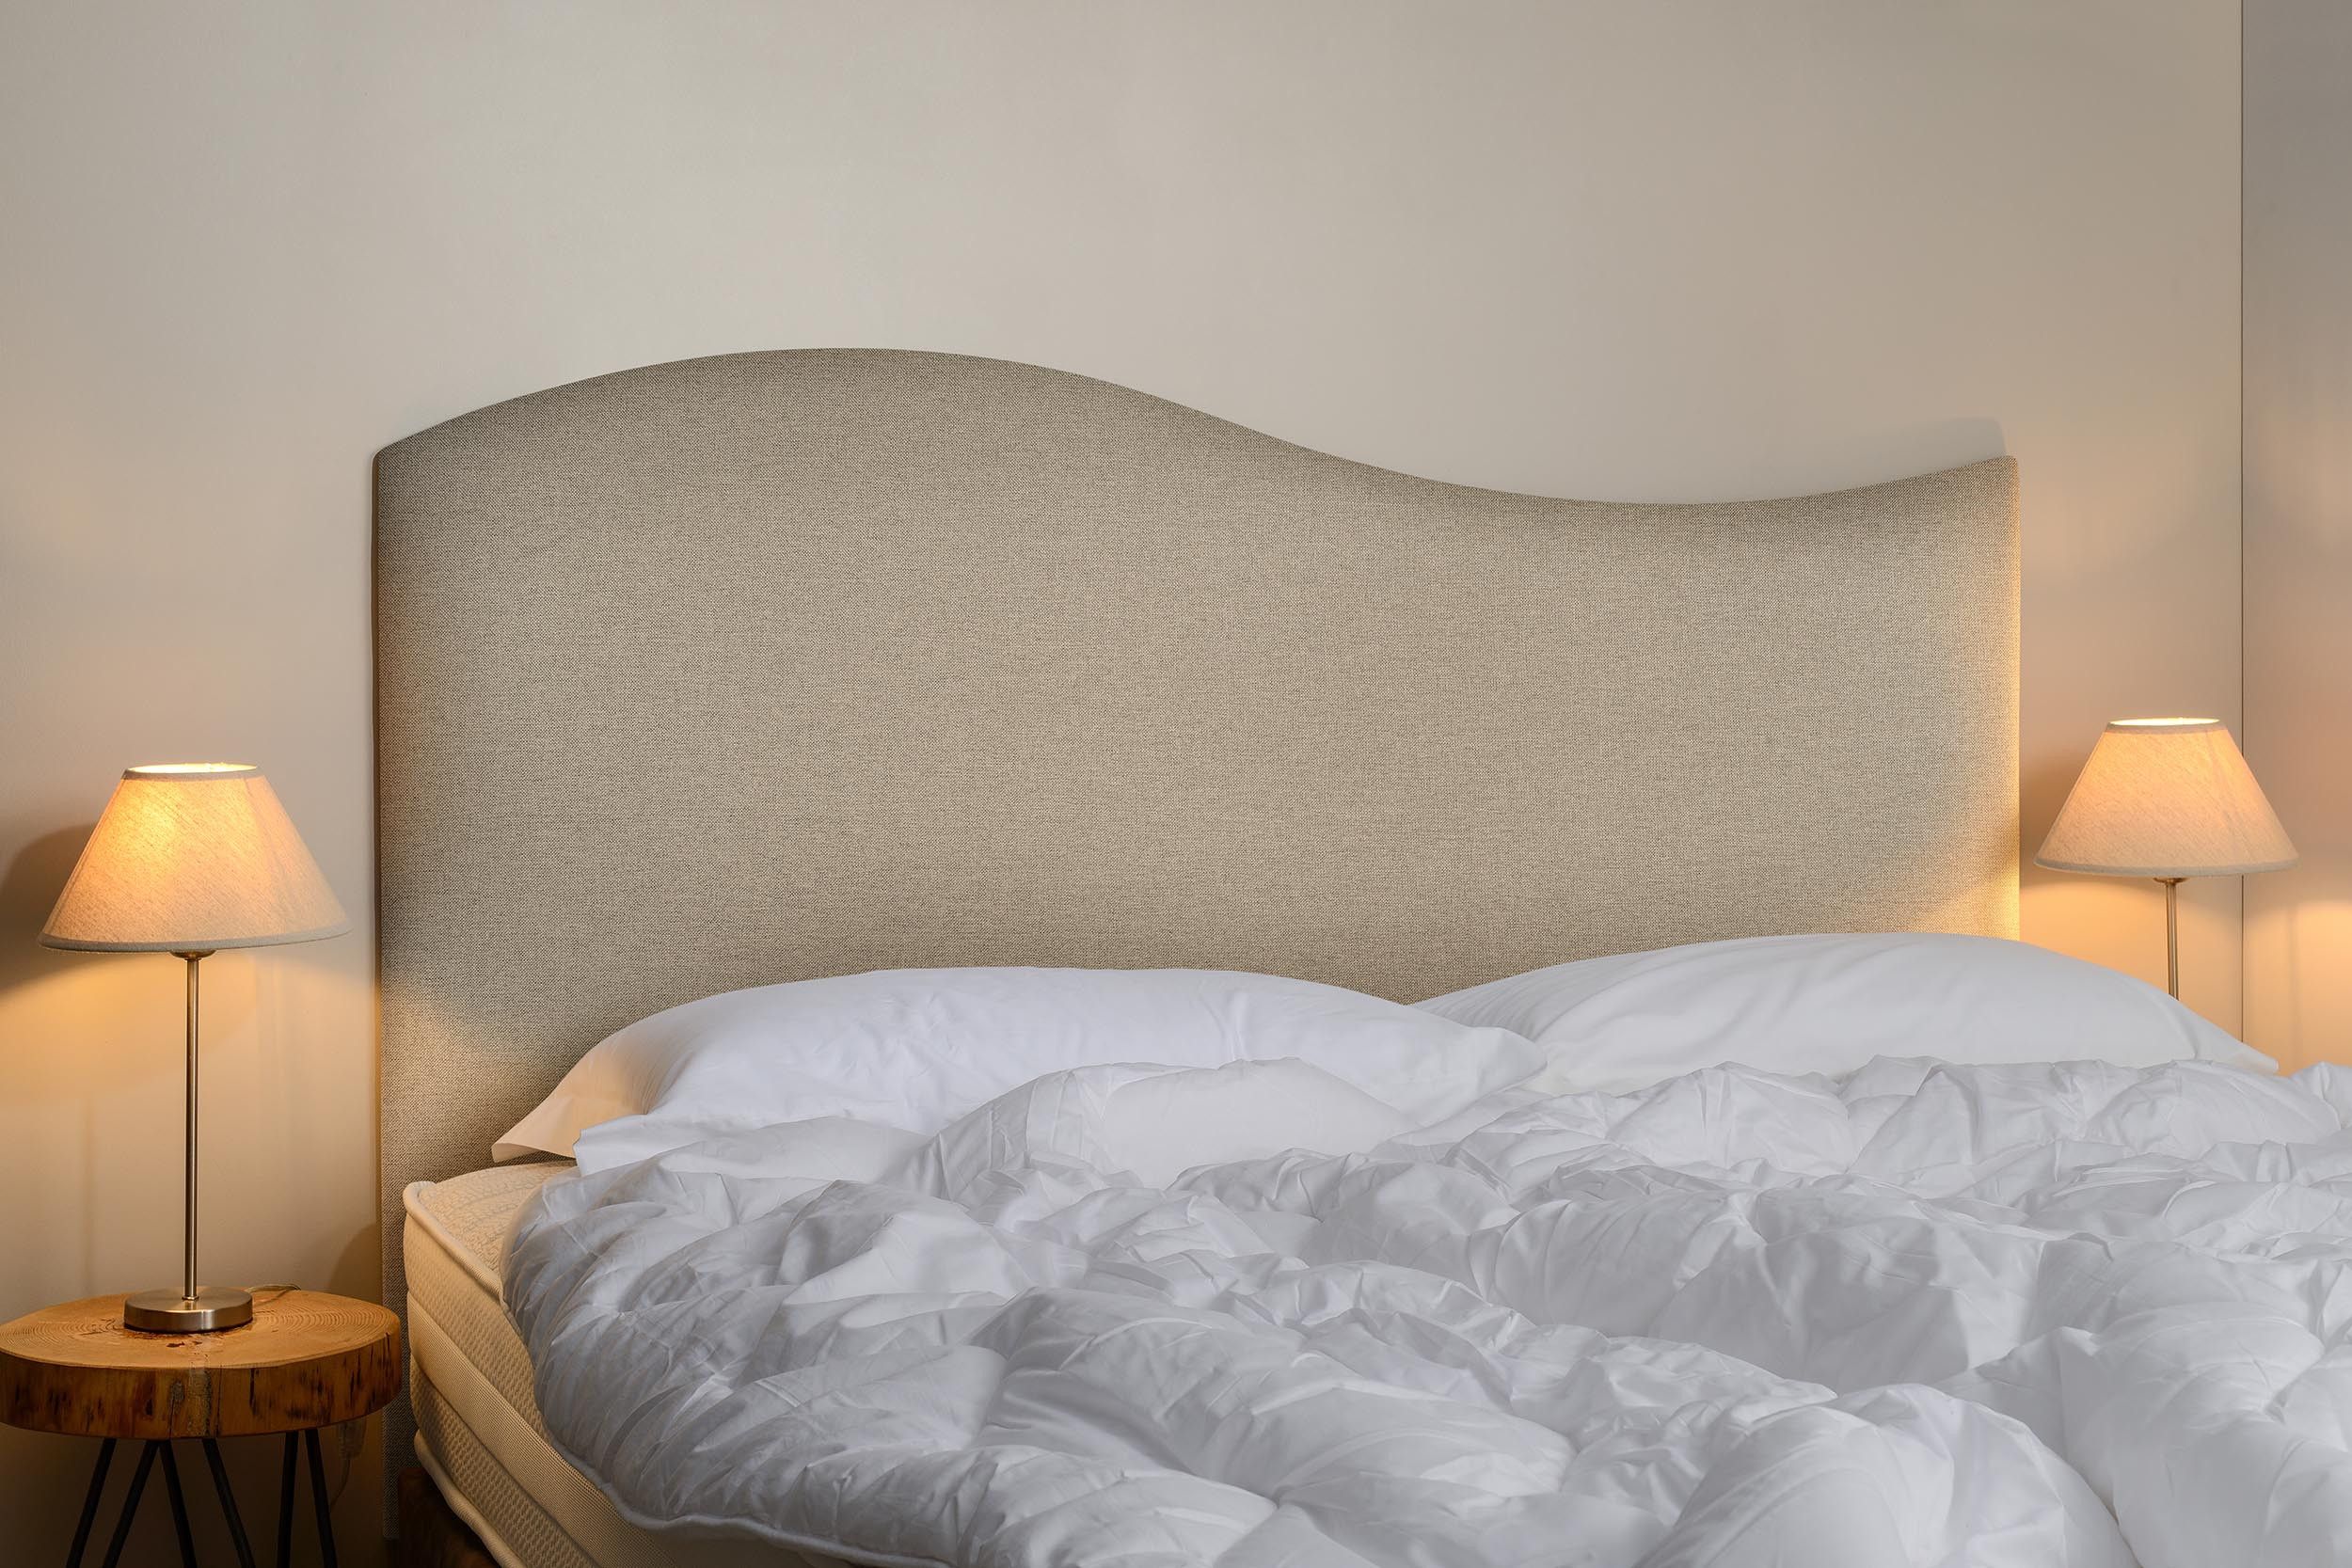 Cache-sommier : 10 modèles pour sublimer son lit - Marie Claire